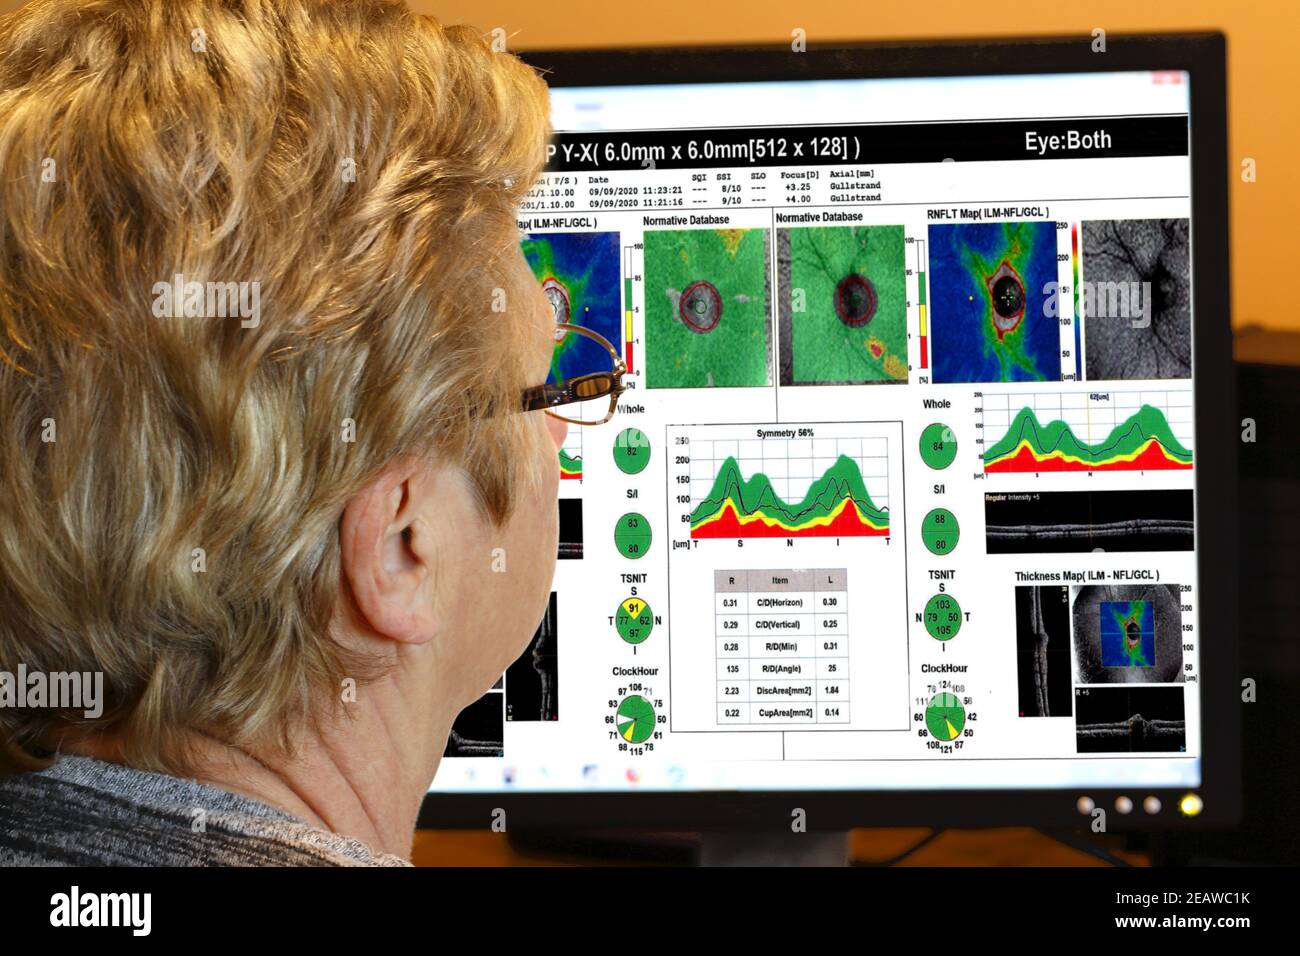 Specialista degli occhi femminile, (posato dal modello), che guarda le scansioni da un test degli occhi sullo schermo di un computer Foto Stock